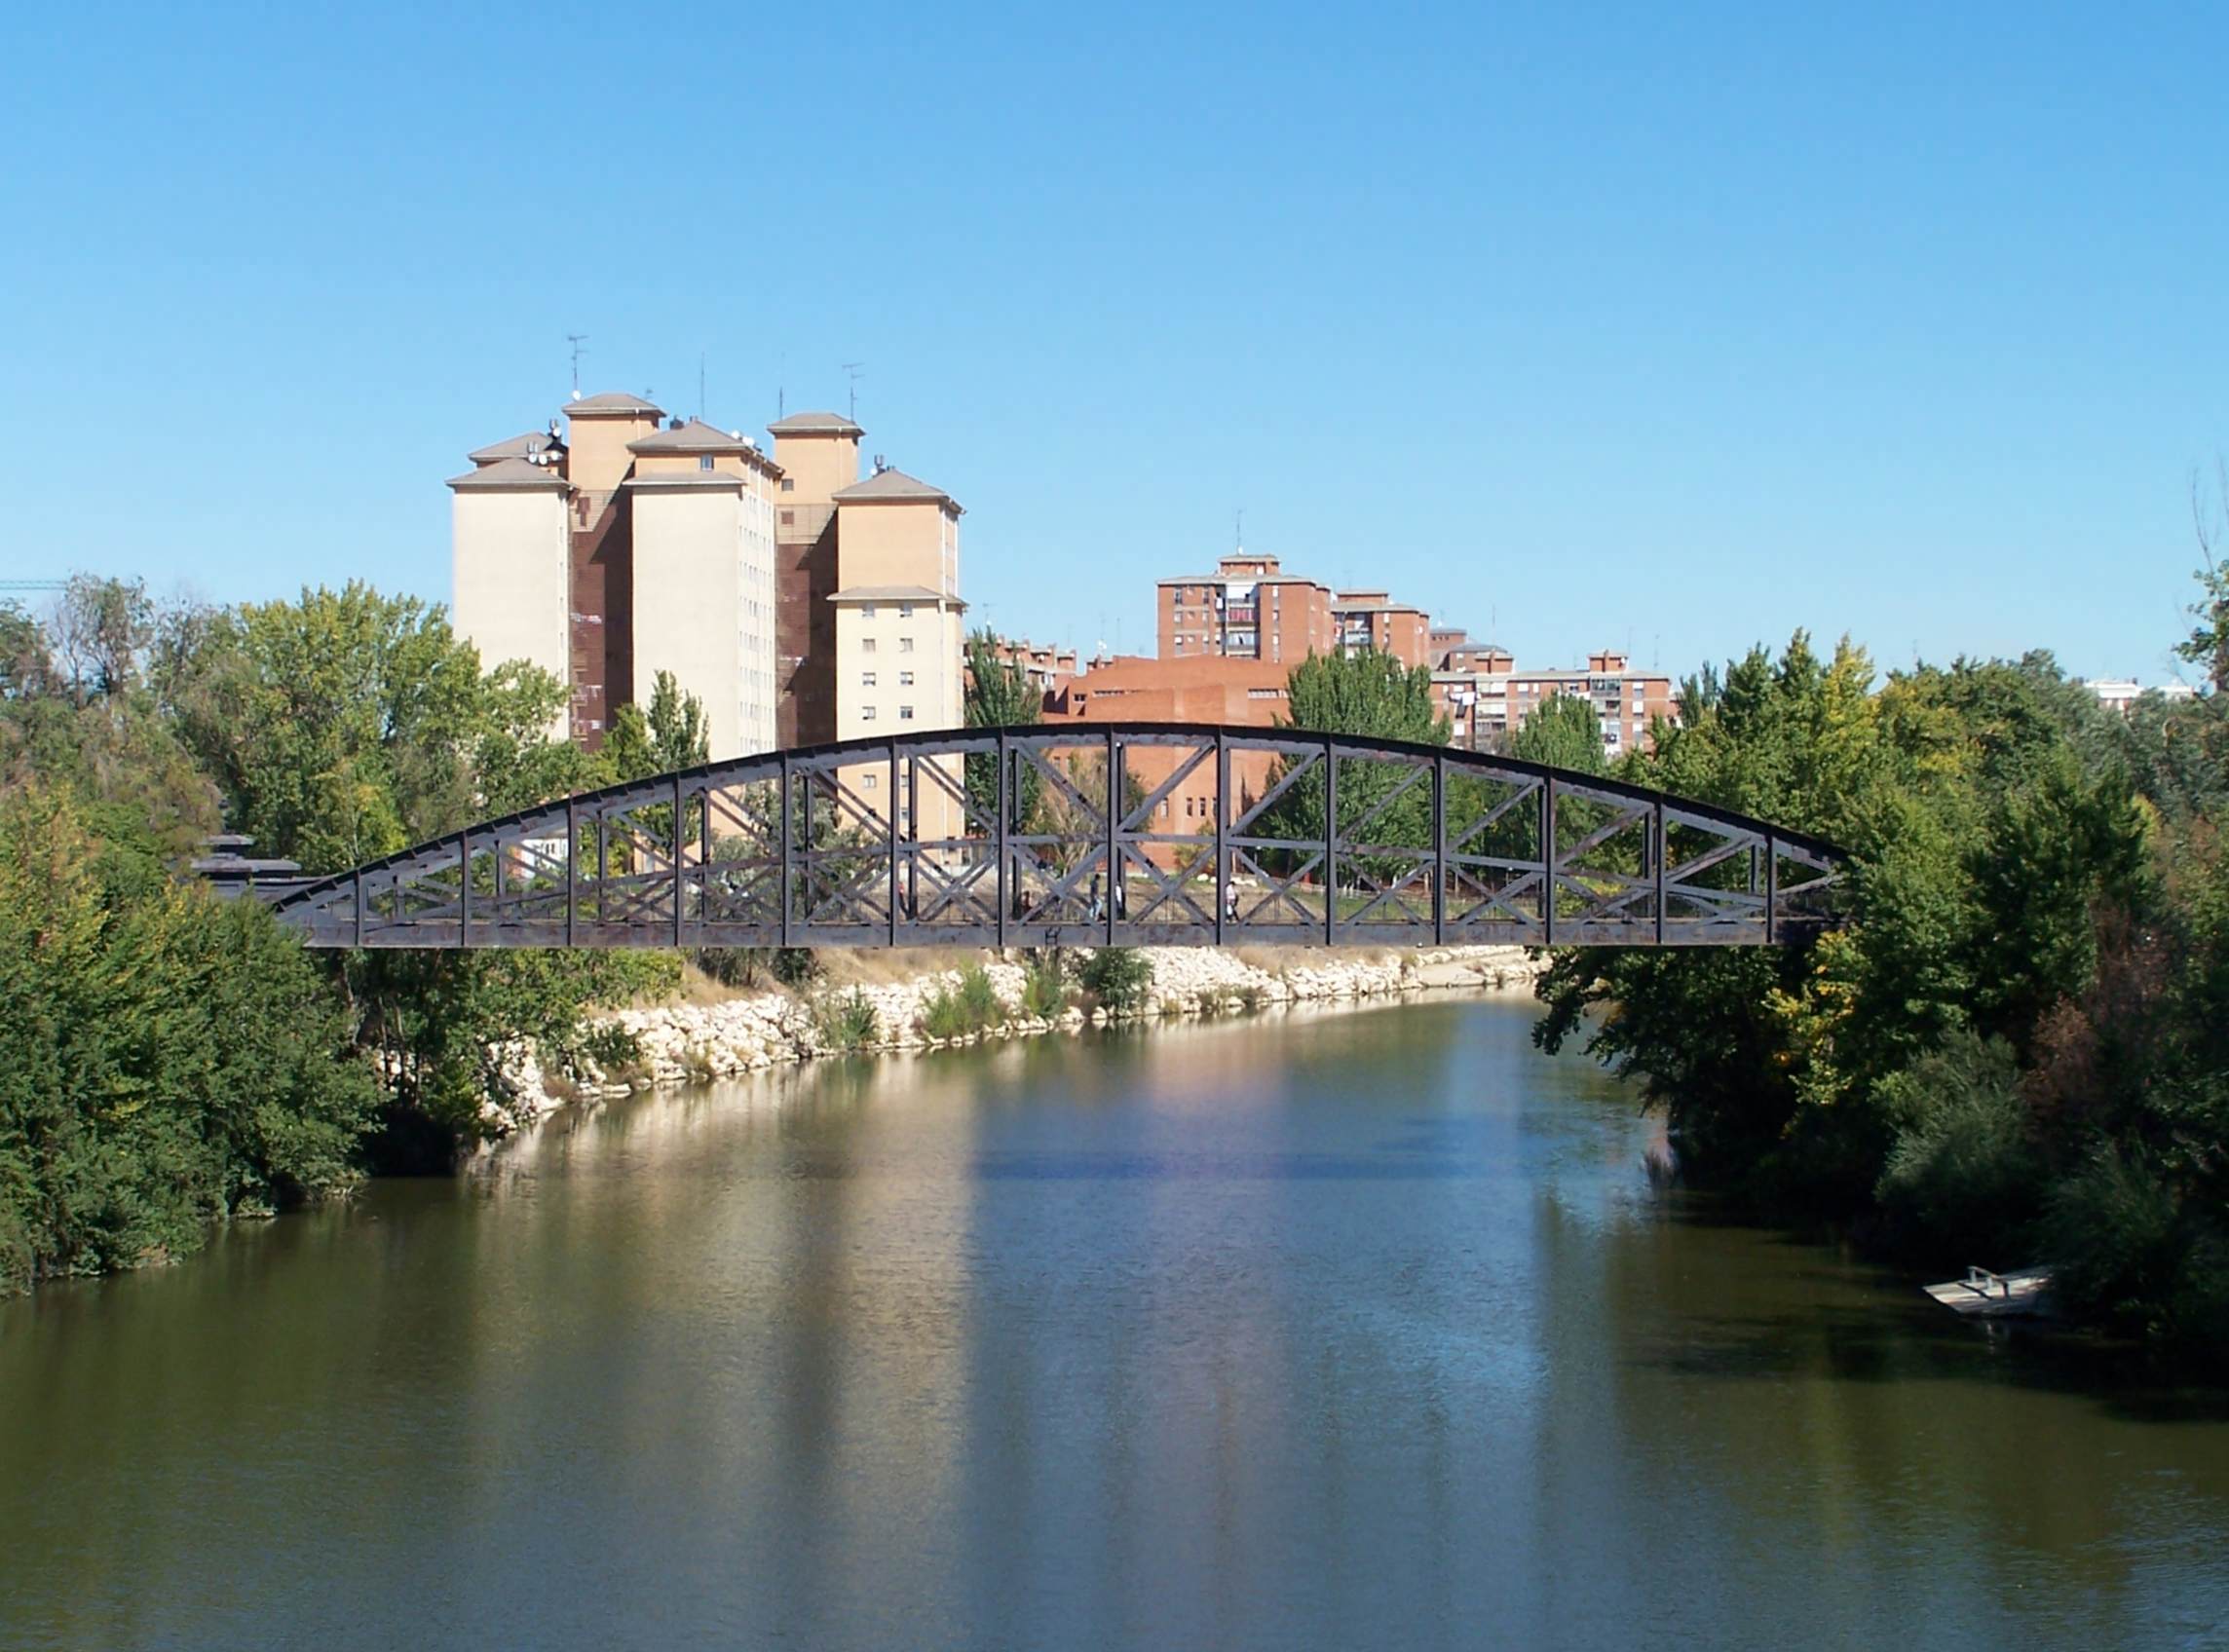 Puente Colgante de Valladolid Wikipedia, enciclopedia